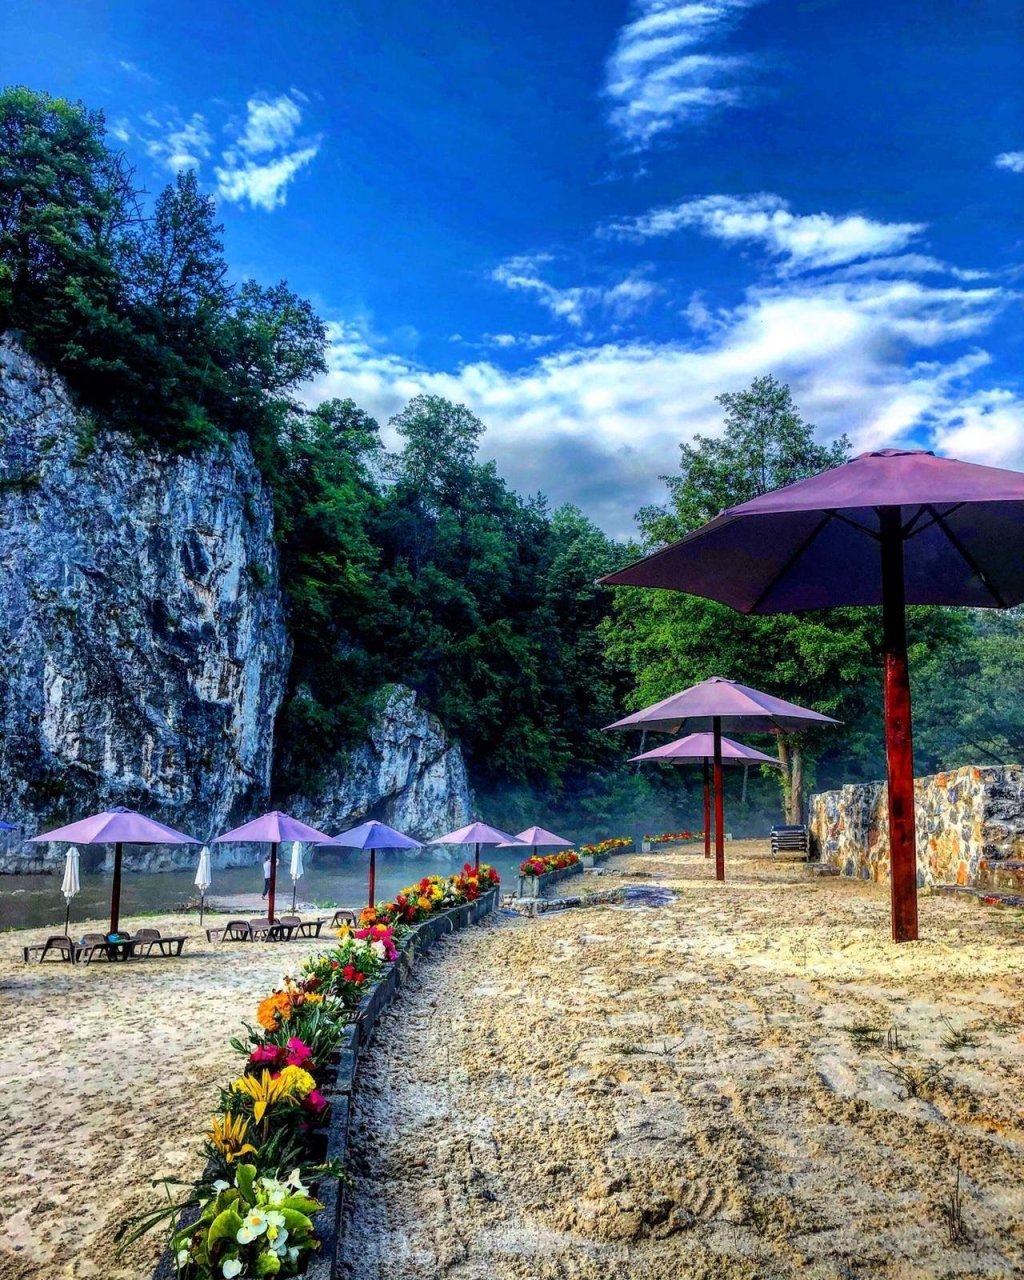 O plajă din Apuseni, la 100 km de Cluj, te duce cu gândul în Thailanda / Relaxare într-un colţ de rai, la pachet cu o priveliște superbă